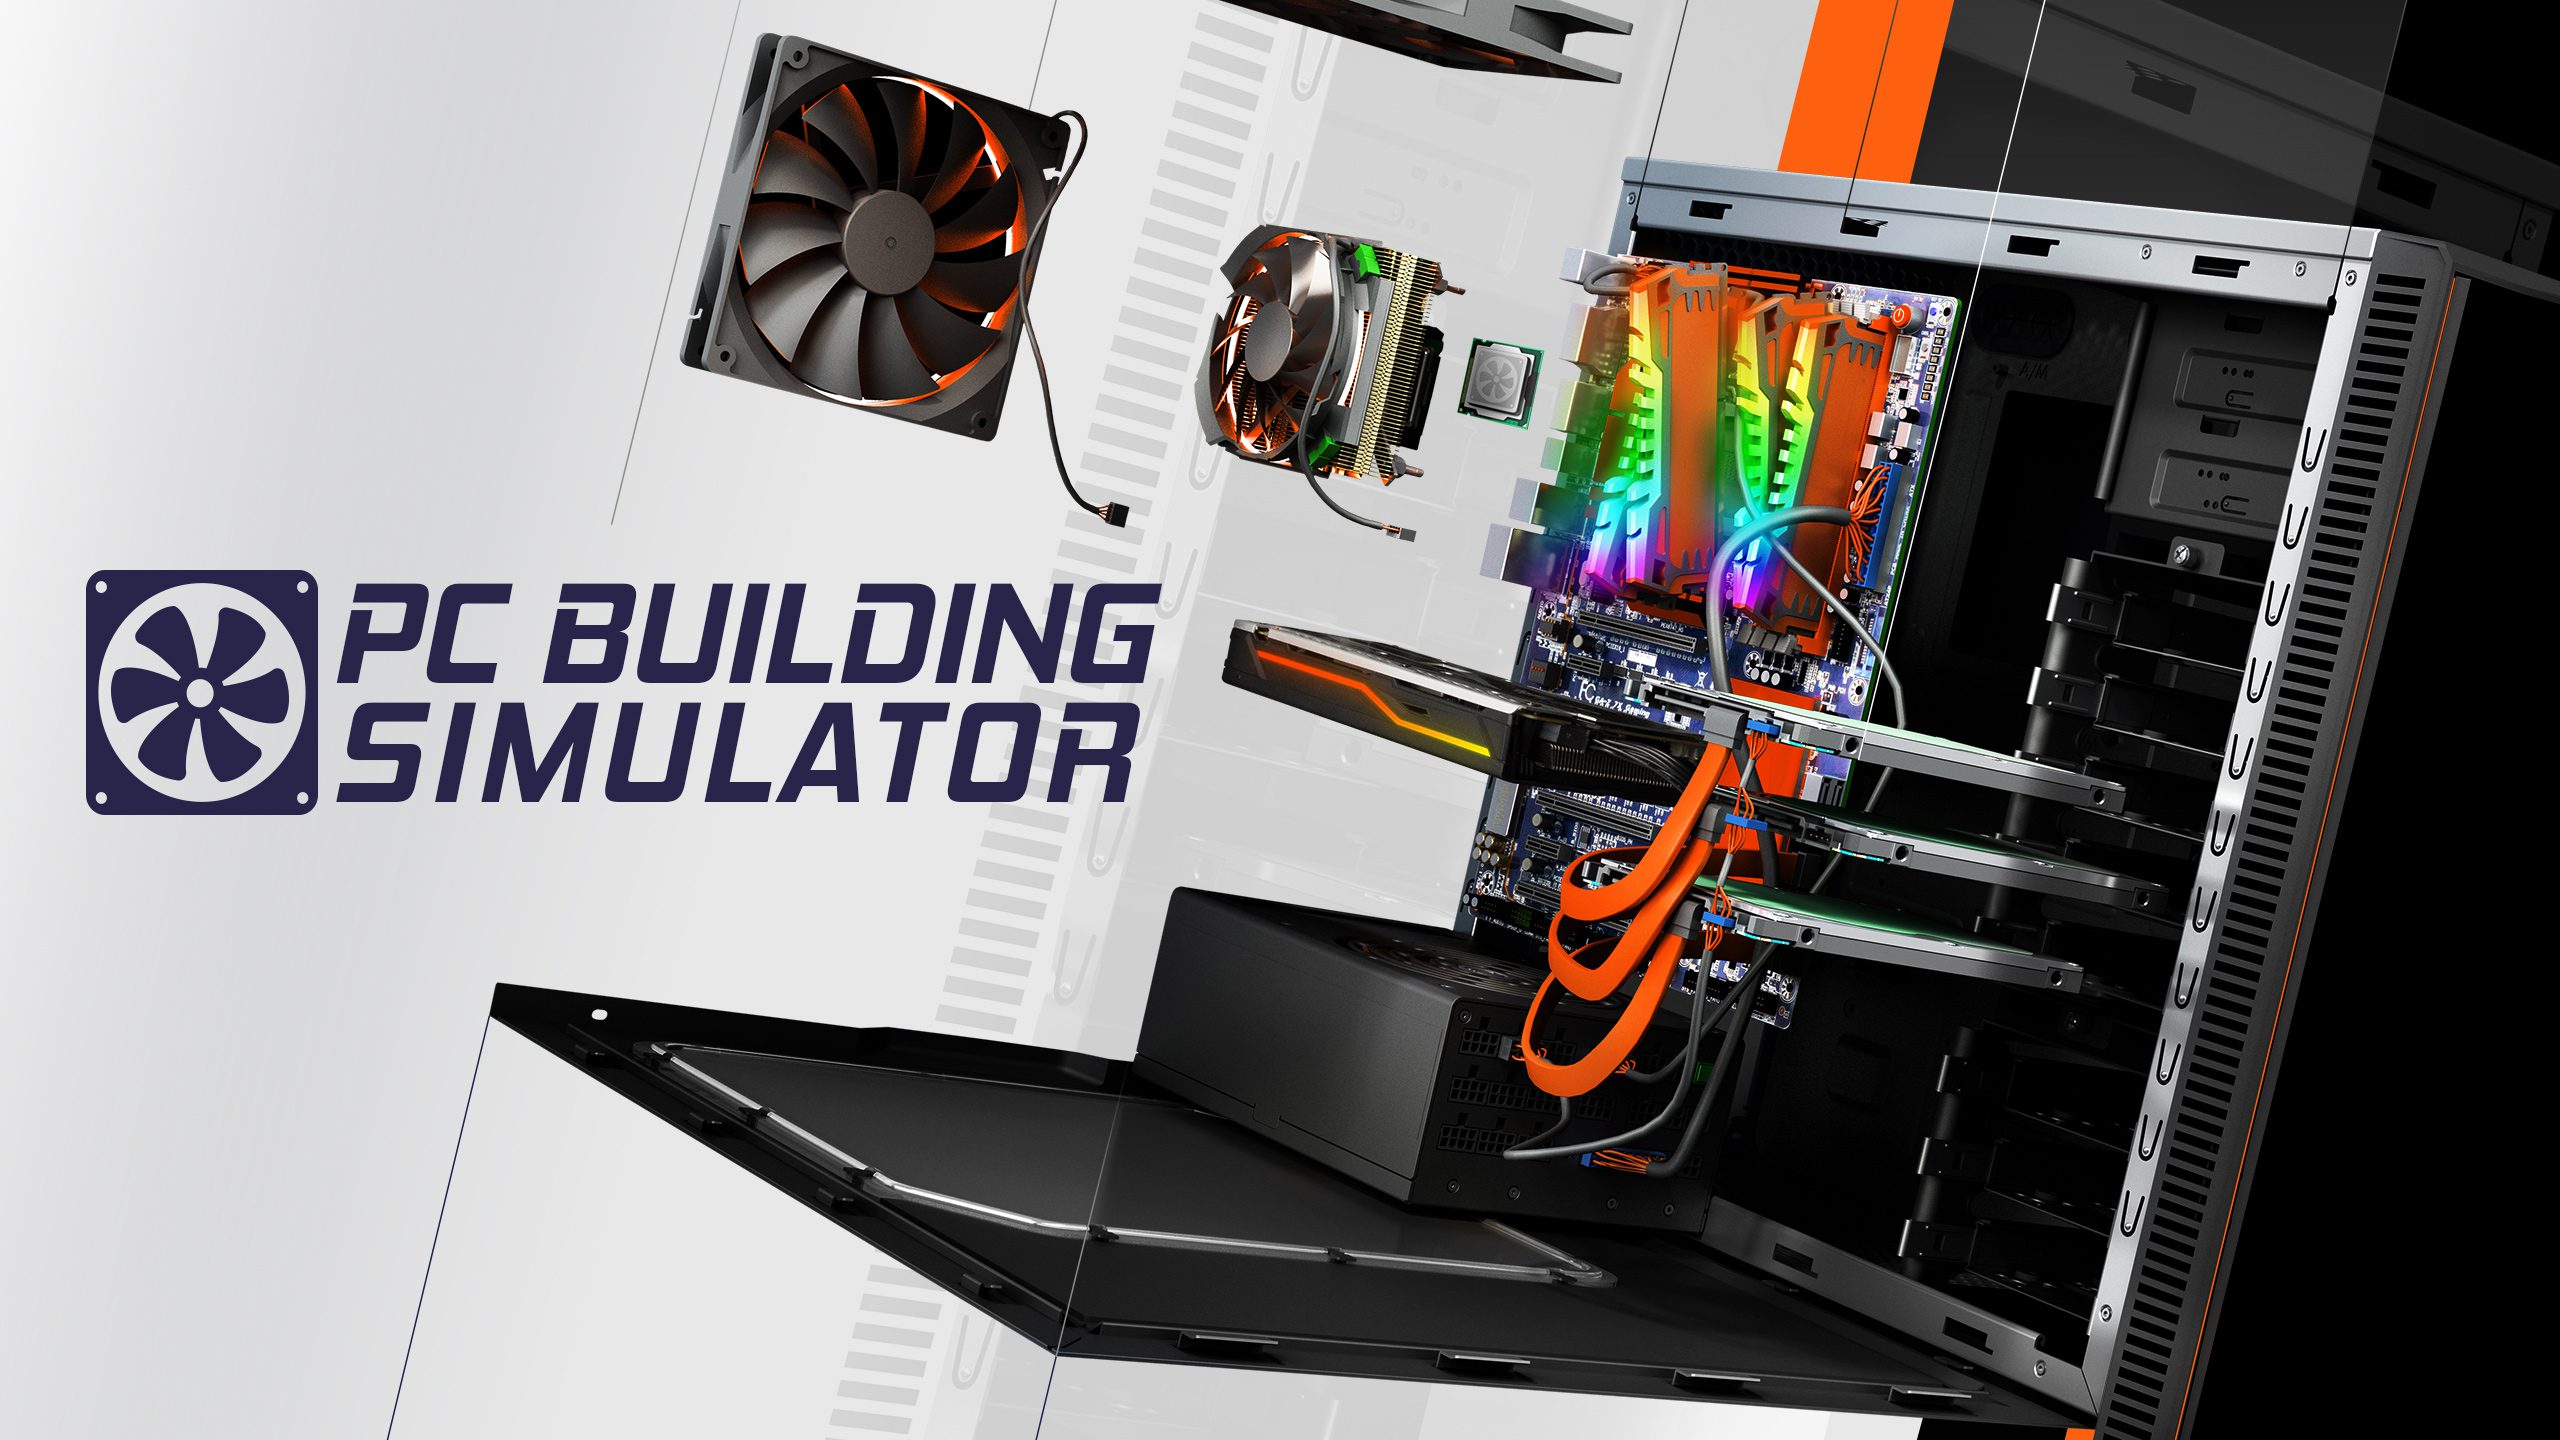 PC Building Simulator выпуск №3  делаем свой компьютерный бизнес с нуля